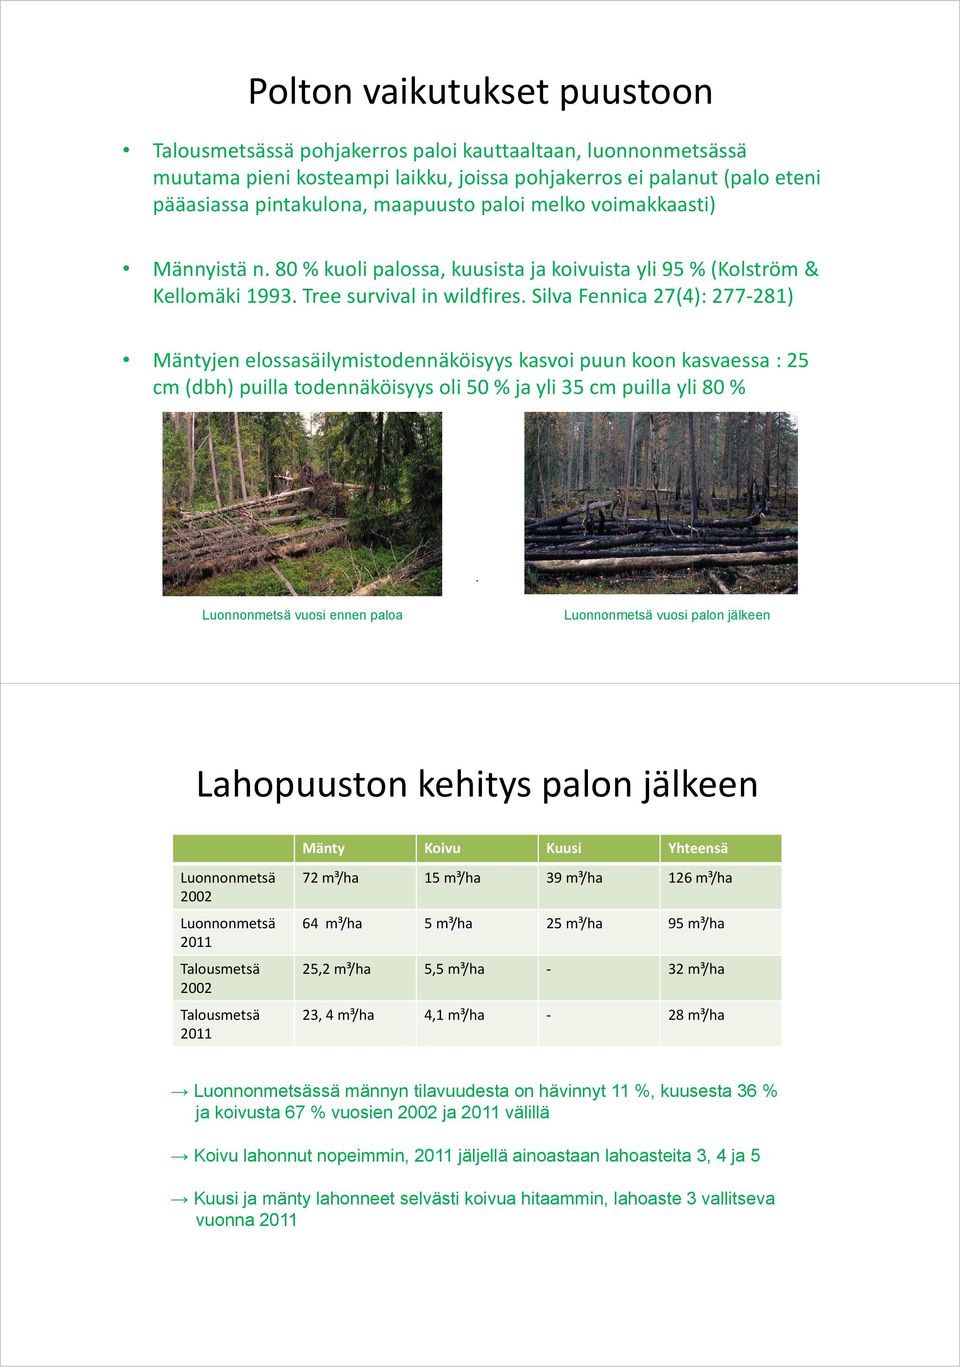 Silva Fennica 27(4): 277 281) Mäntyjen elossasäilymistodennäköisyys kasvoi puun koon kasvaessa : 25 cm (dbh) puilla todennäköisyys oli 50 % ja yli 35 cm puilla yli 80 %.